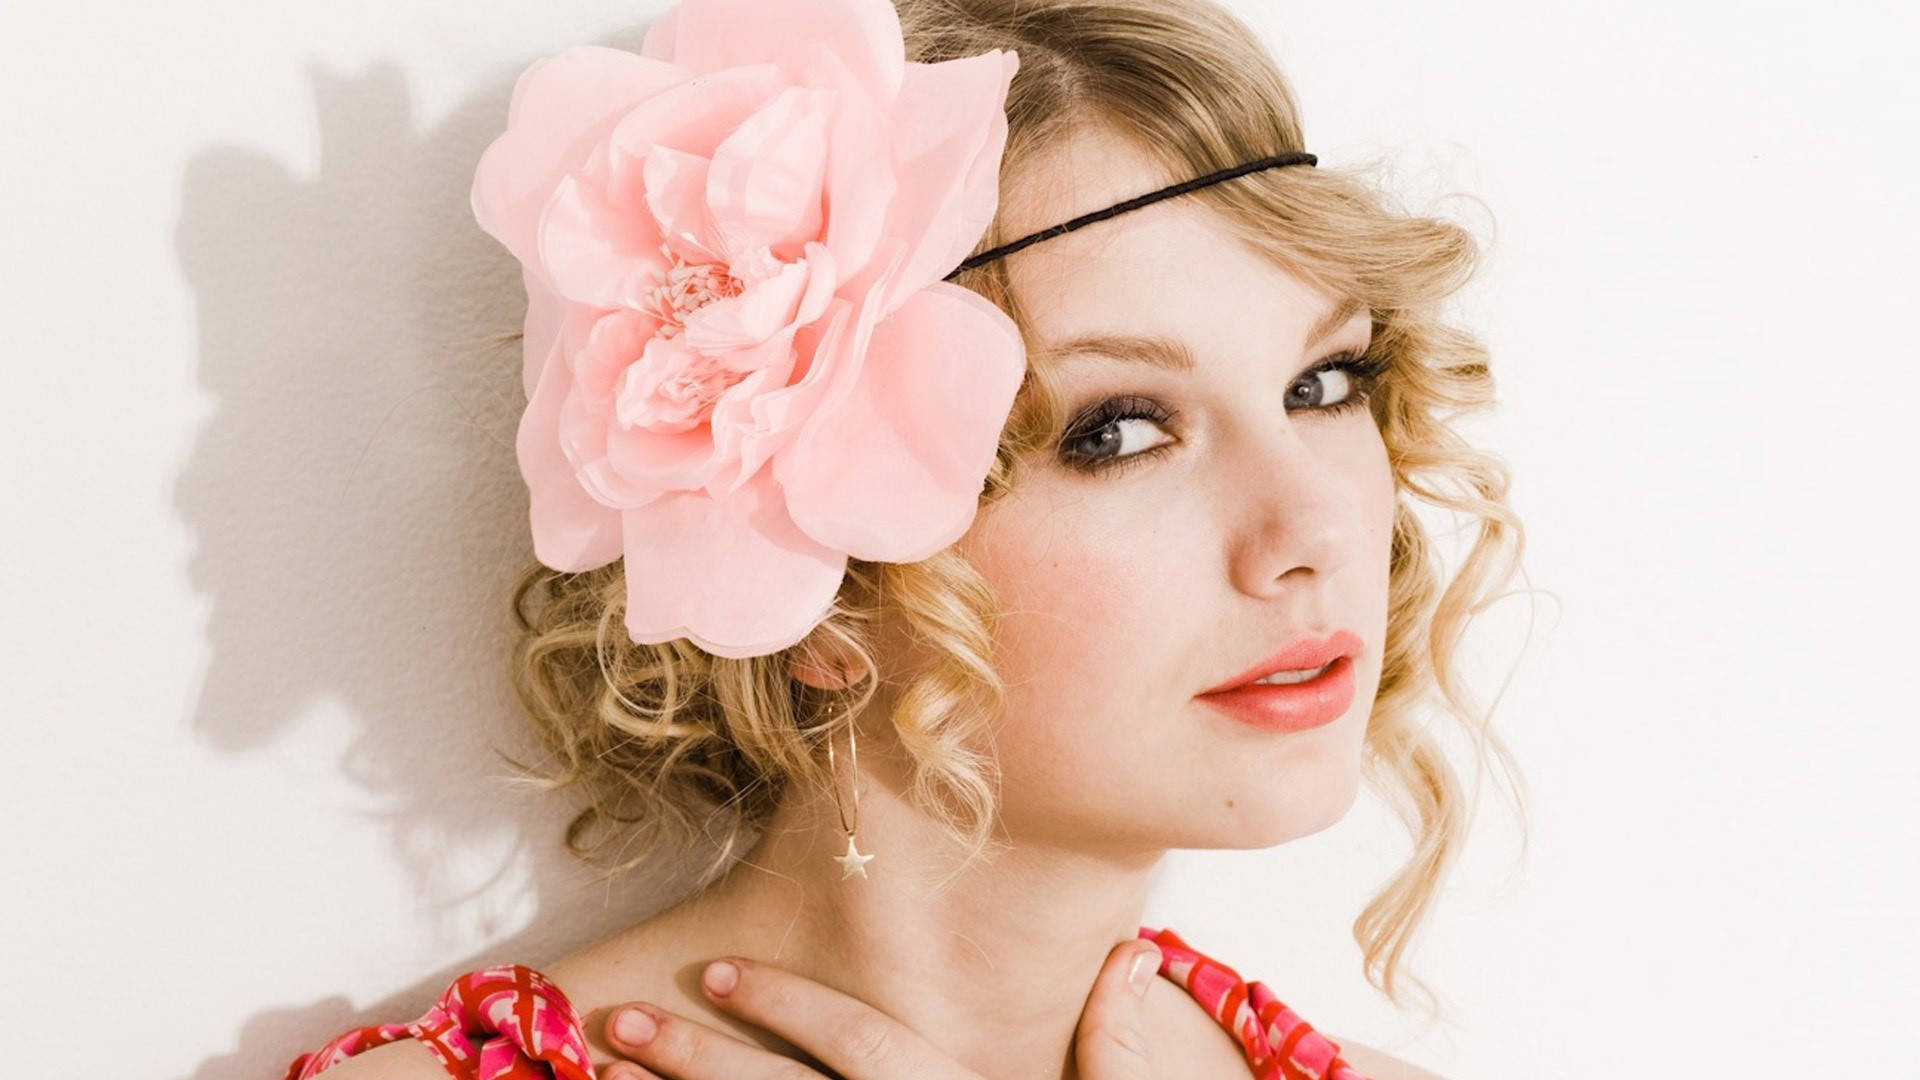 Taylor Swift Looking Pretty in Seventeen Magazine Wallpaper